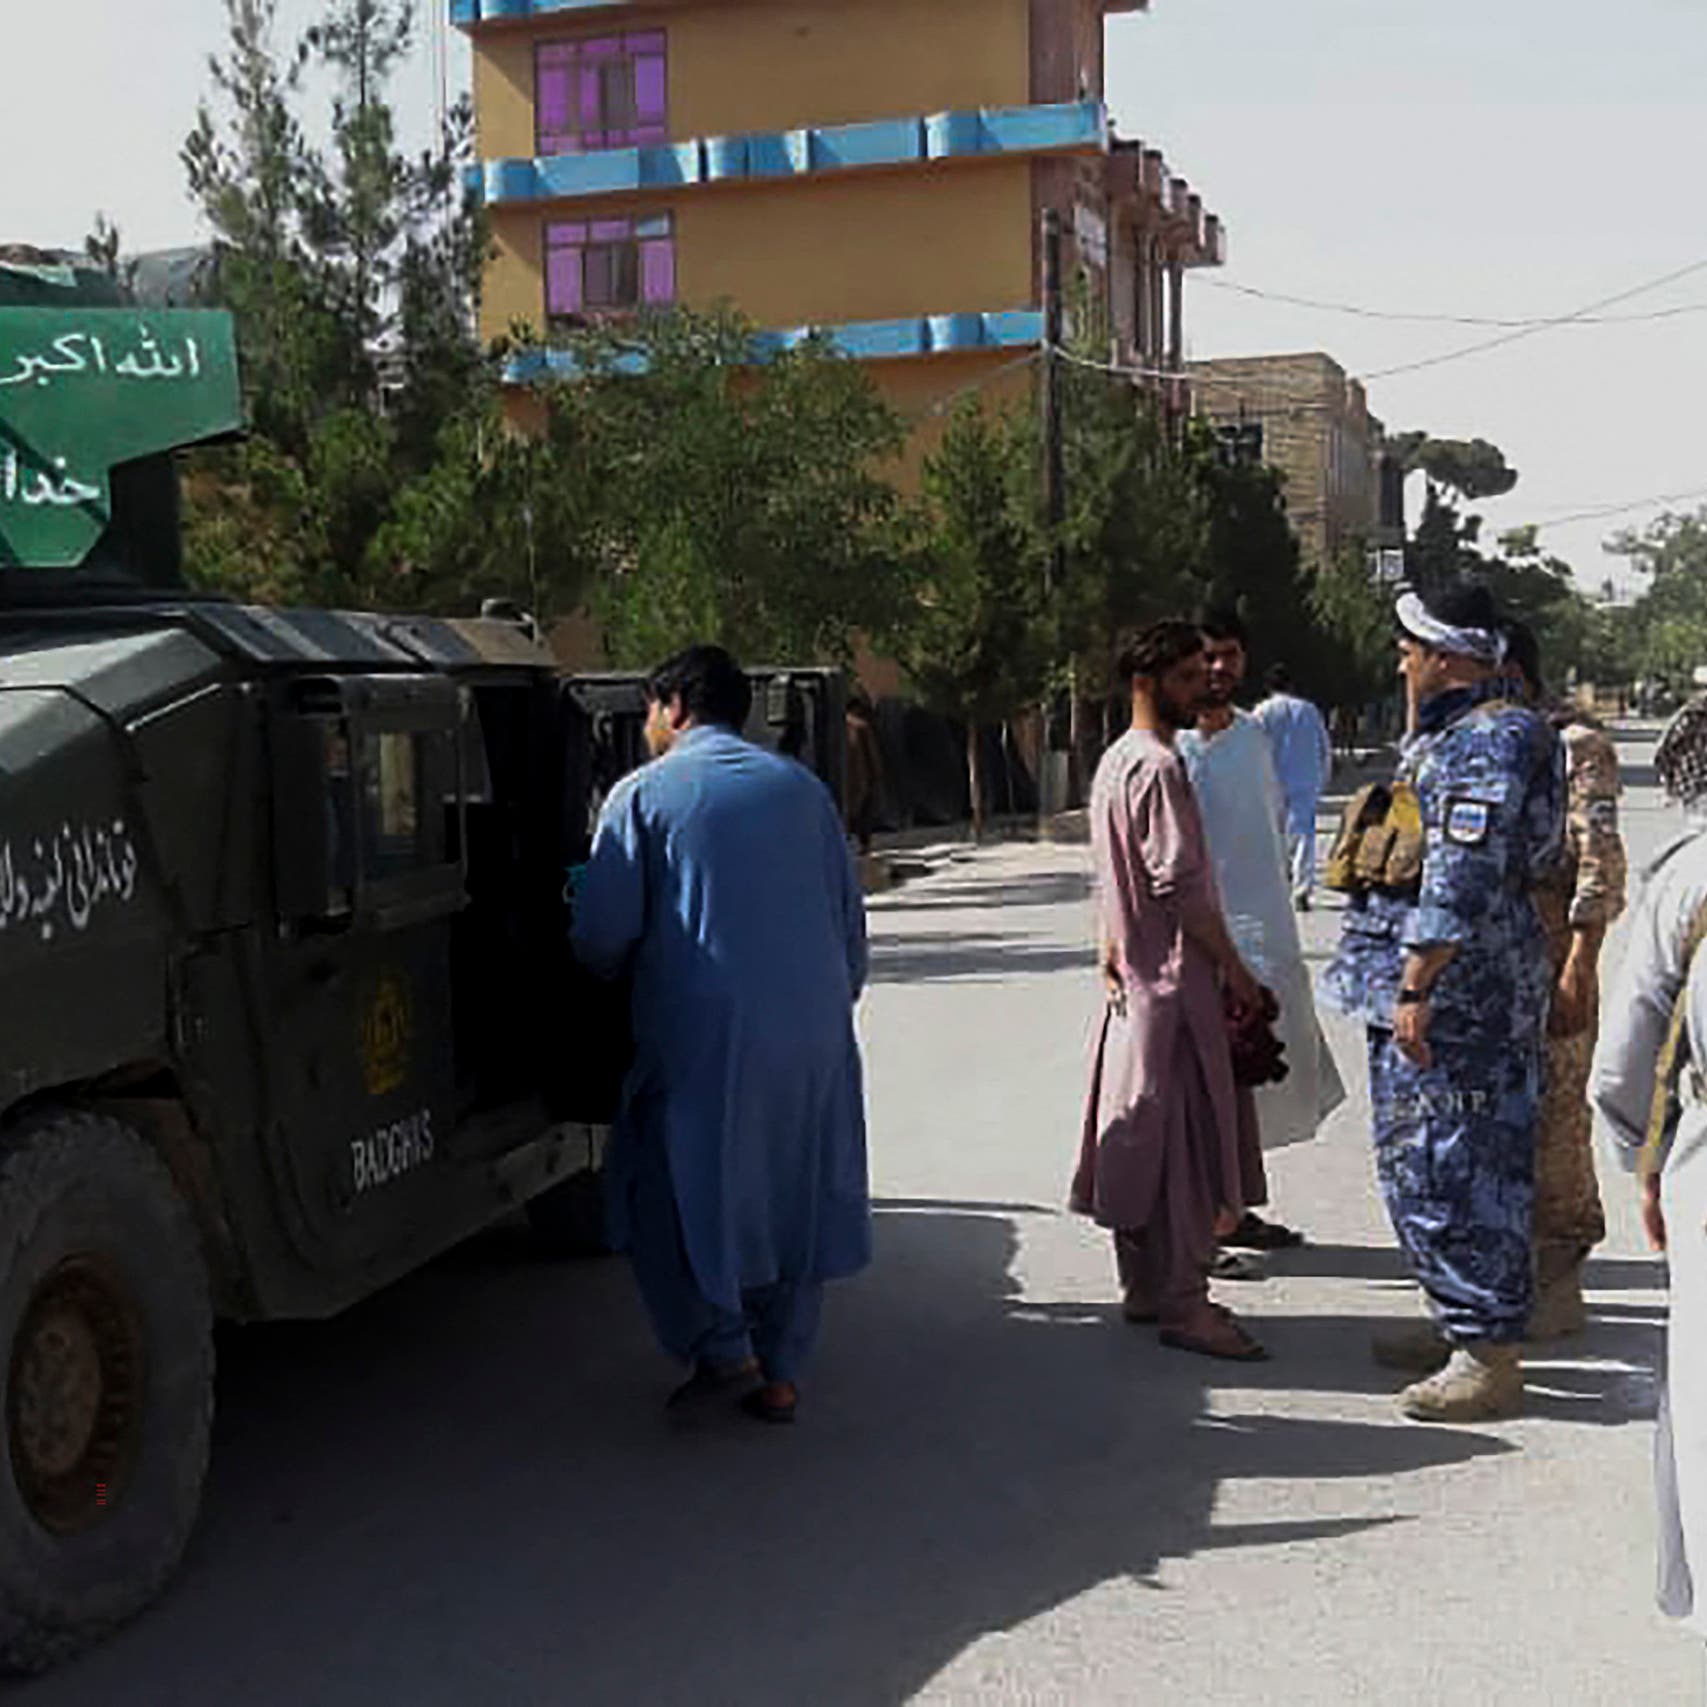 اتفاق لوقف النار بين مسؤولين محليين وطالبان في غرب أفغانستان